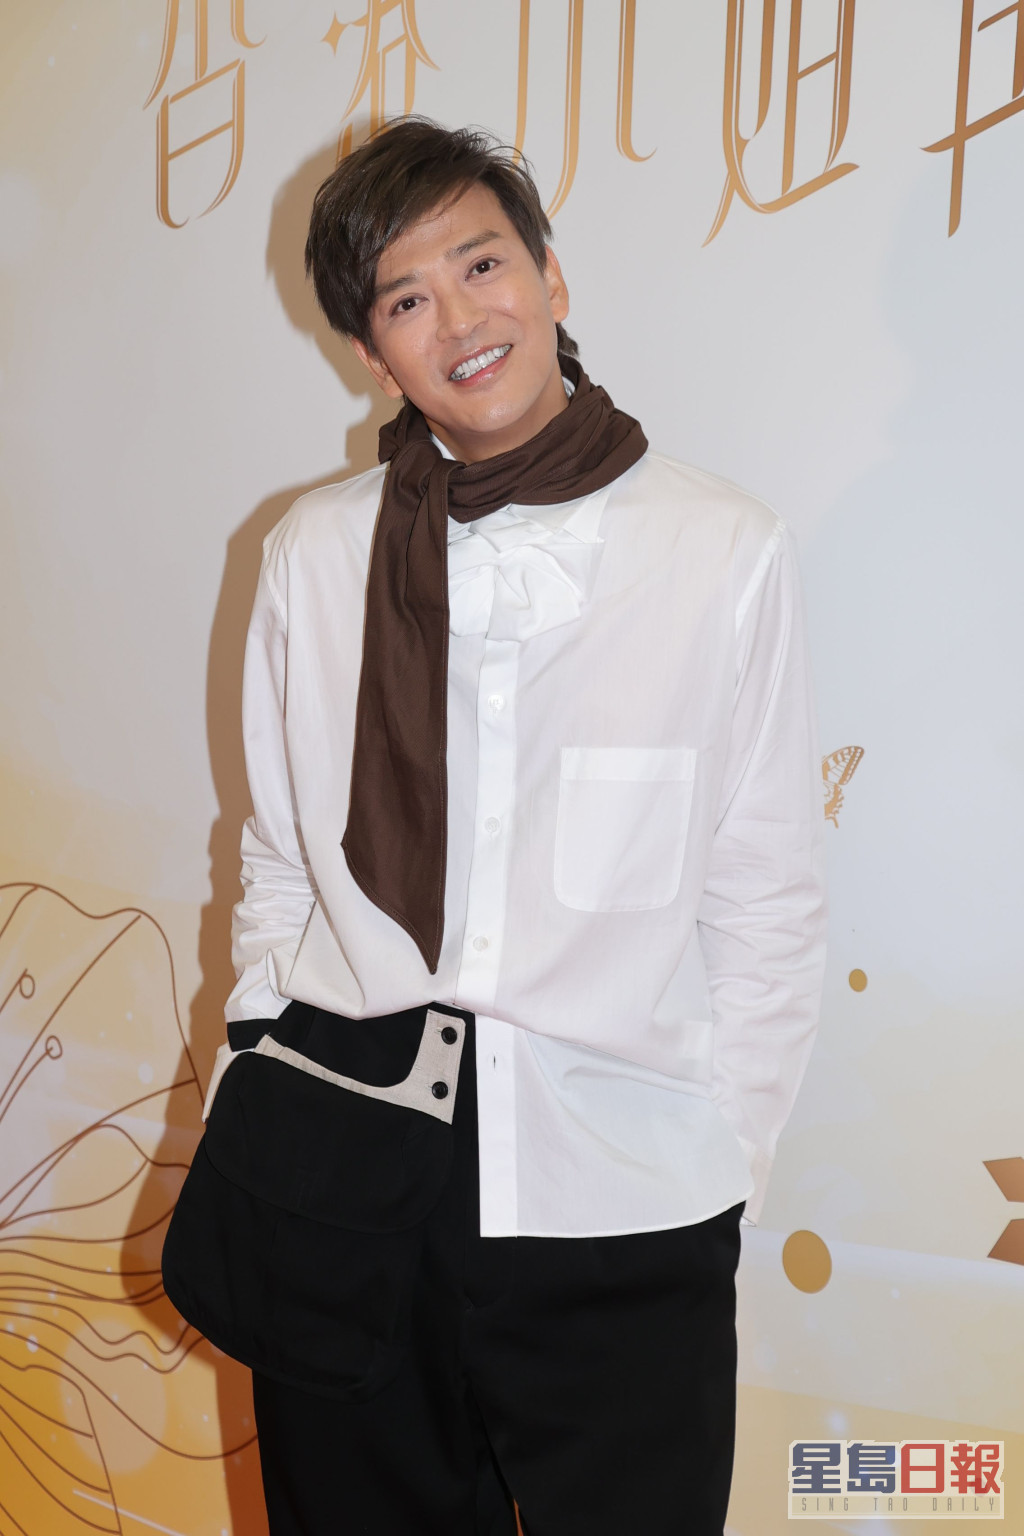 陈晓东上次任港姐表演嘉宾已经系2000年嘅事。